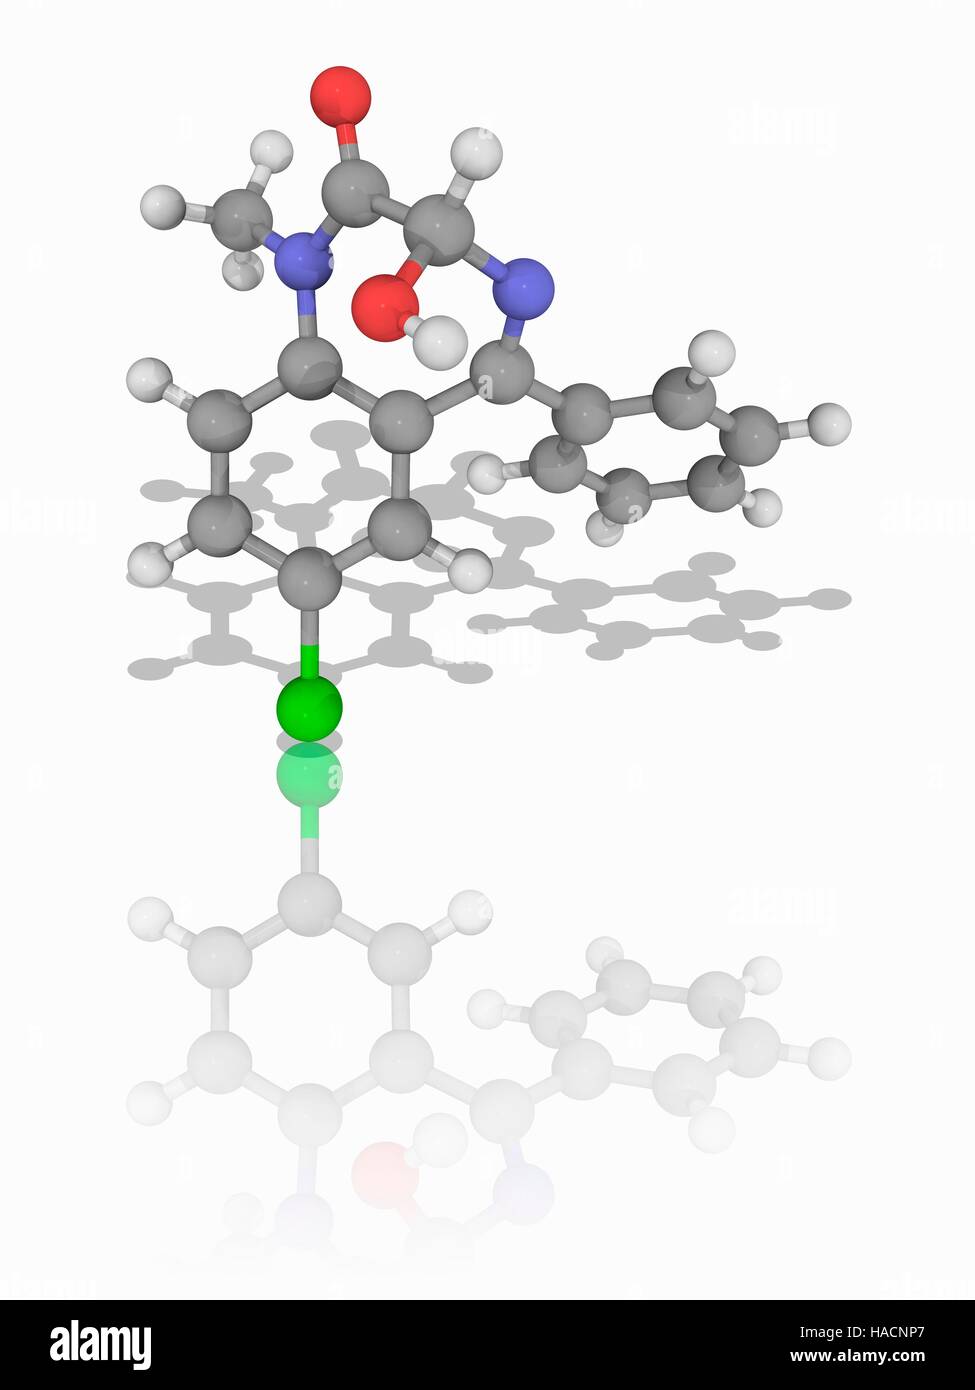 Temazepam. Le modèle moléculaire du médicament temazepam (C16.H13.Cl.N2.O2) une action intermédiaire 3-hydroxy hypnotique de la classe des benzodiazépines. Il est utilisé pour traiter l'insomnie. Les atomes sont représentés comme des sphères et sont codés par couleur : carbone (gris), l'hydrogène (blanc), l'azote (bleu), l'oxygène (rouge) et le chlore (vert). L'illustration. Banque D'Images